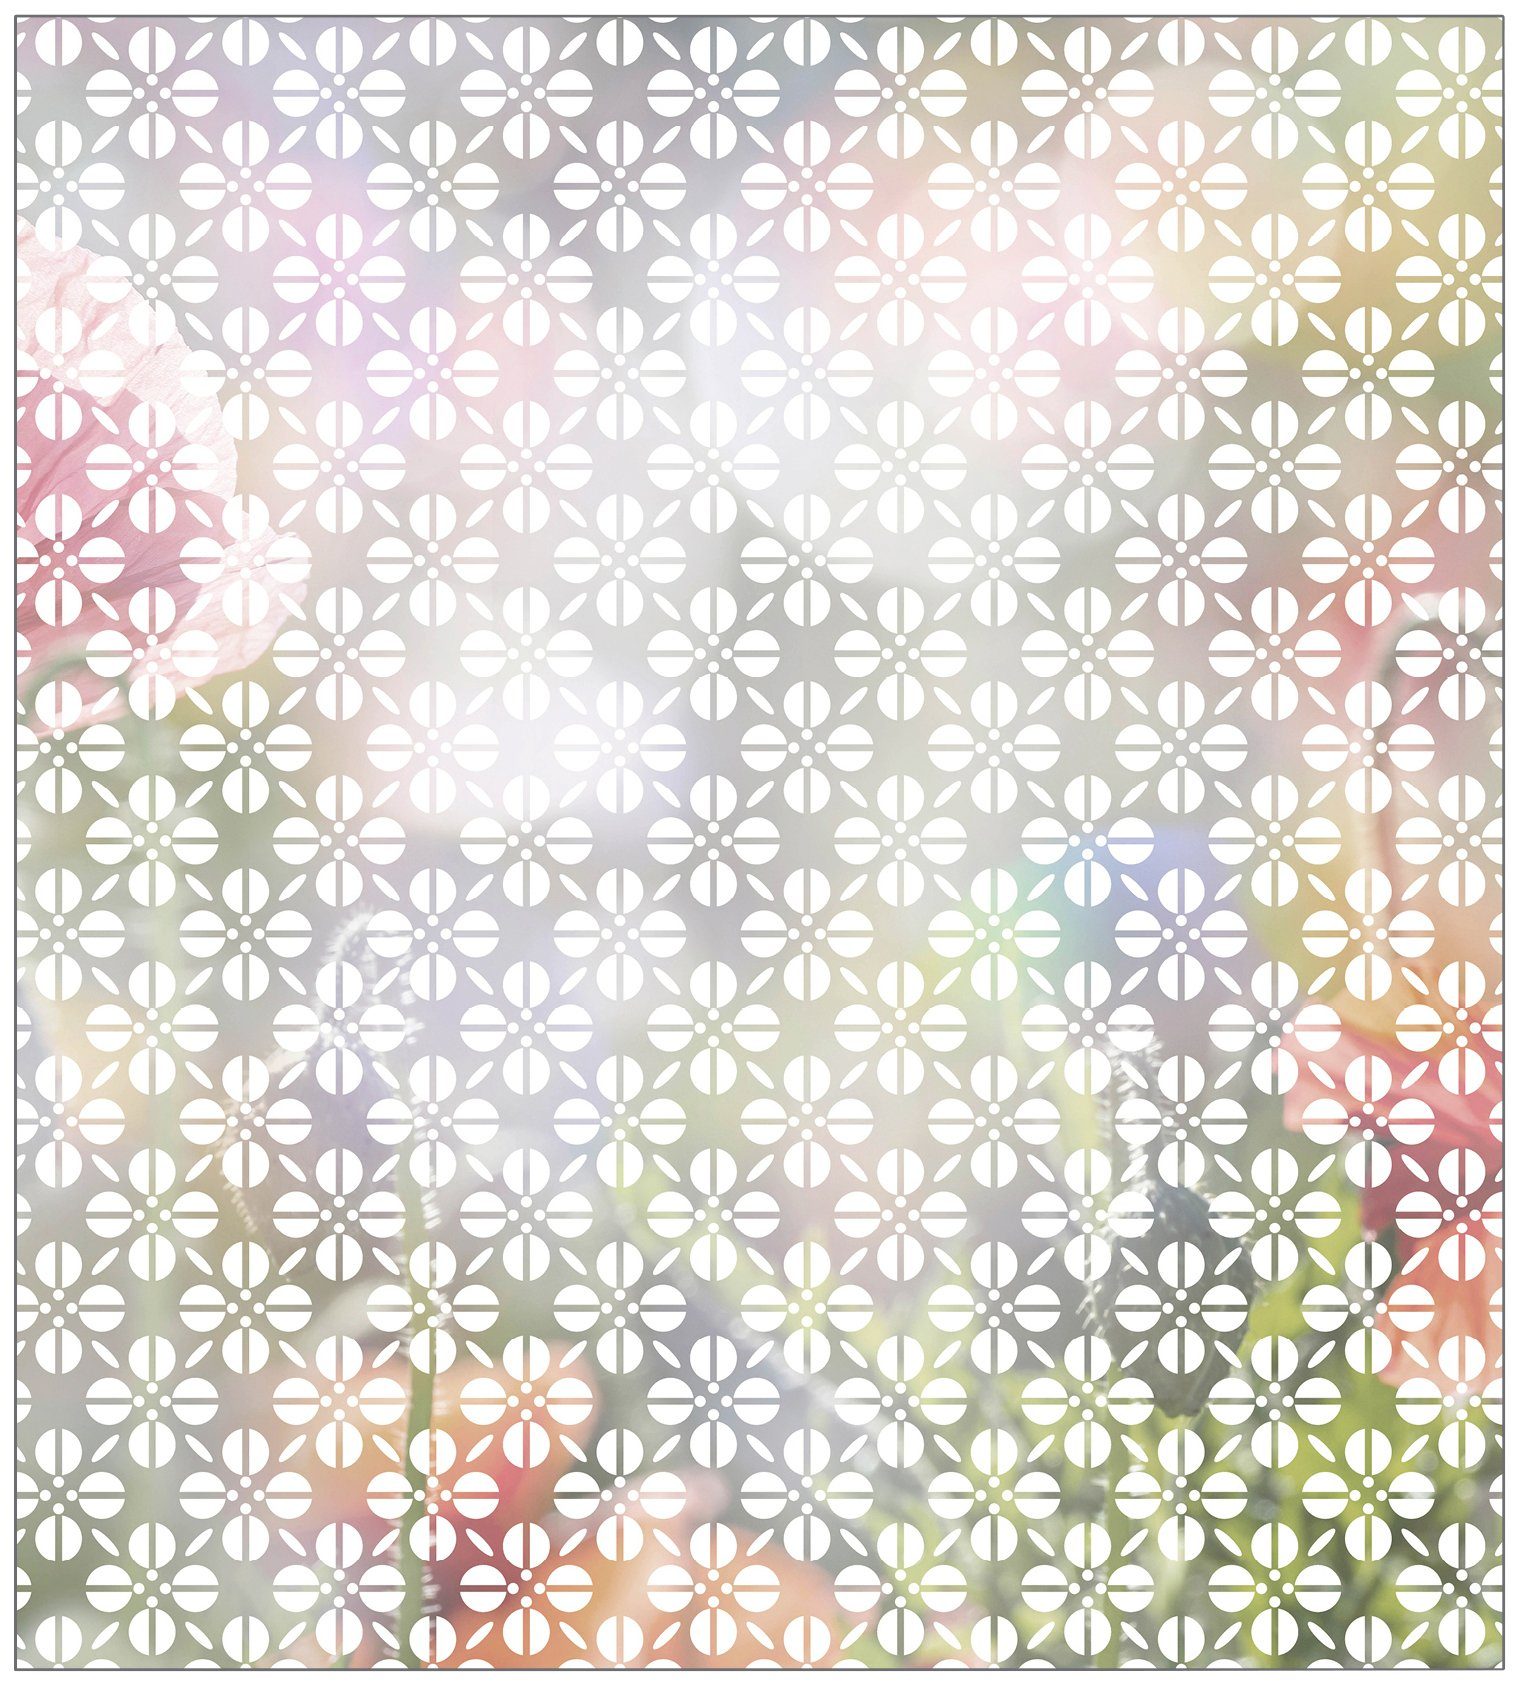 Fensterfolie Look MySpotti, Grafik Blumenmuster halbtransparent, 100 x white, glatt, haftend 90 cm, statisch